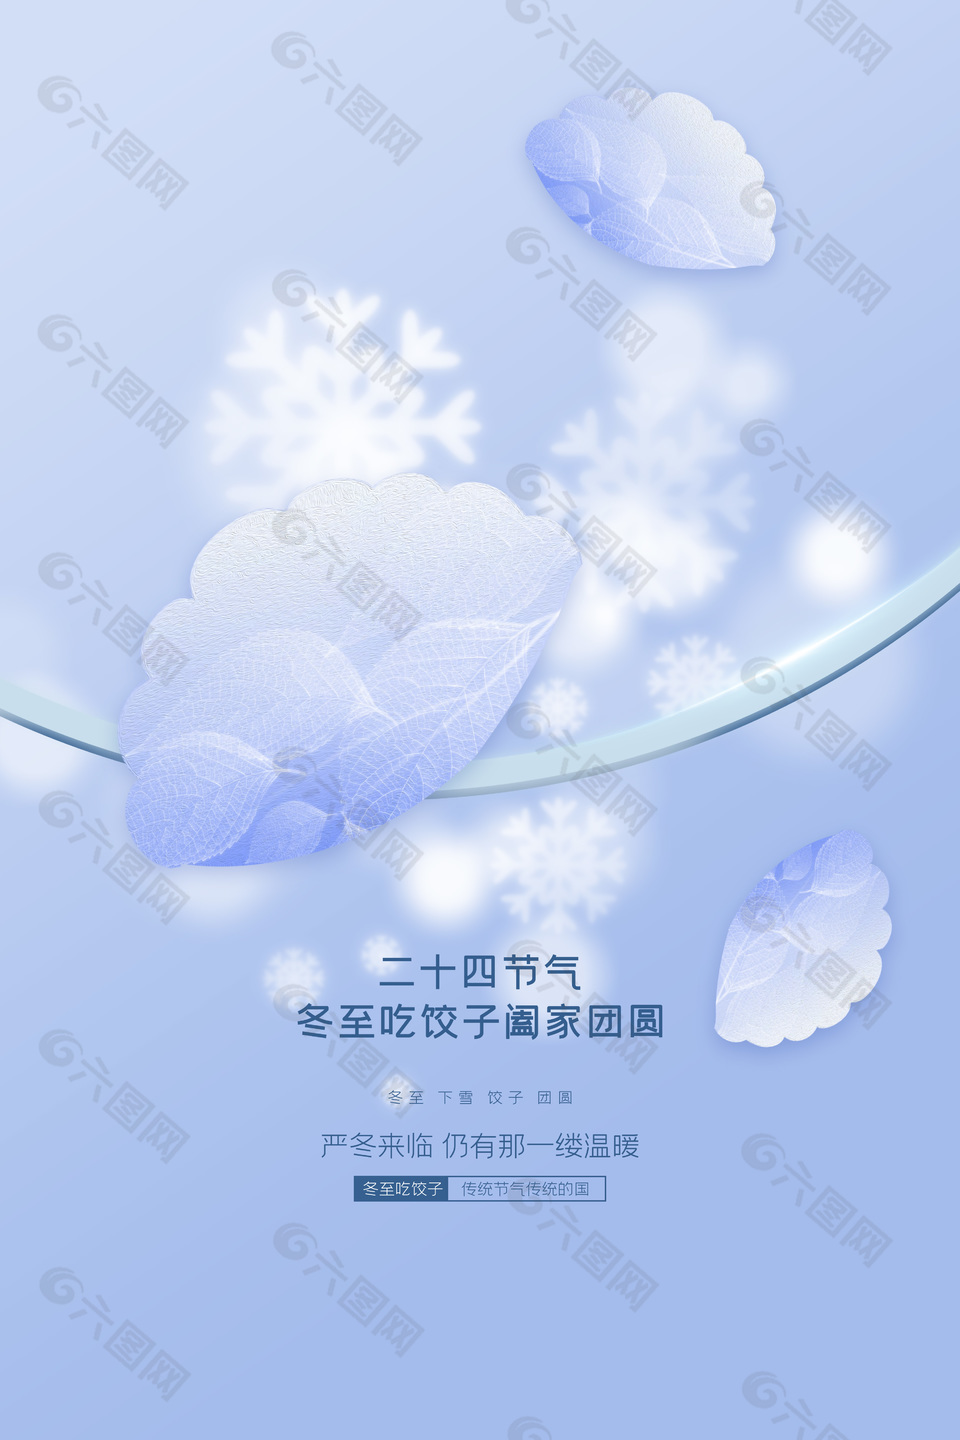 冬至下雪团圆吃饺子微信单图设计